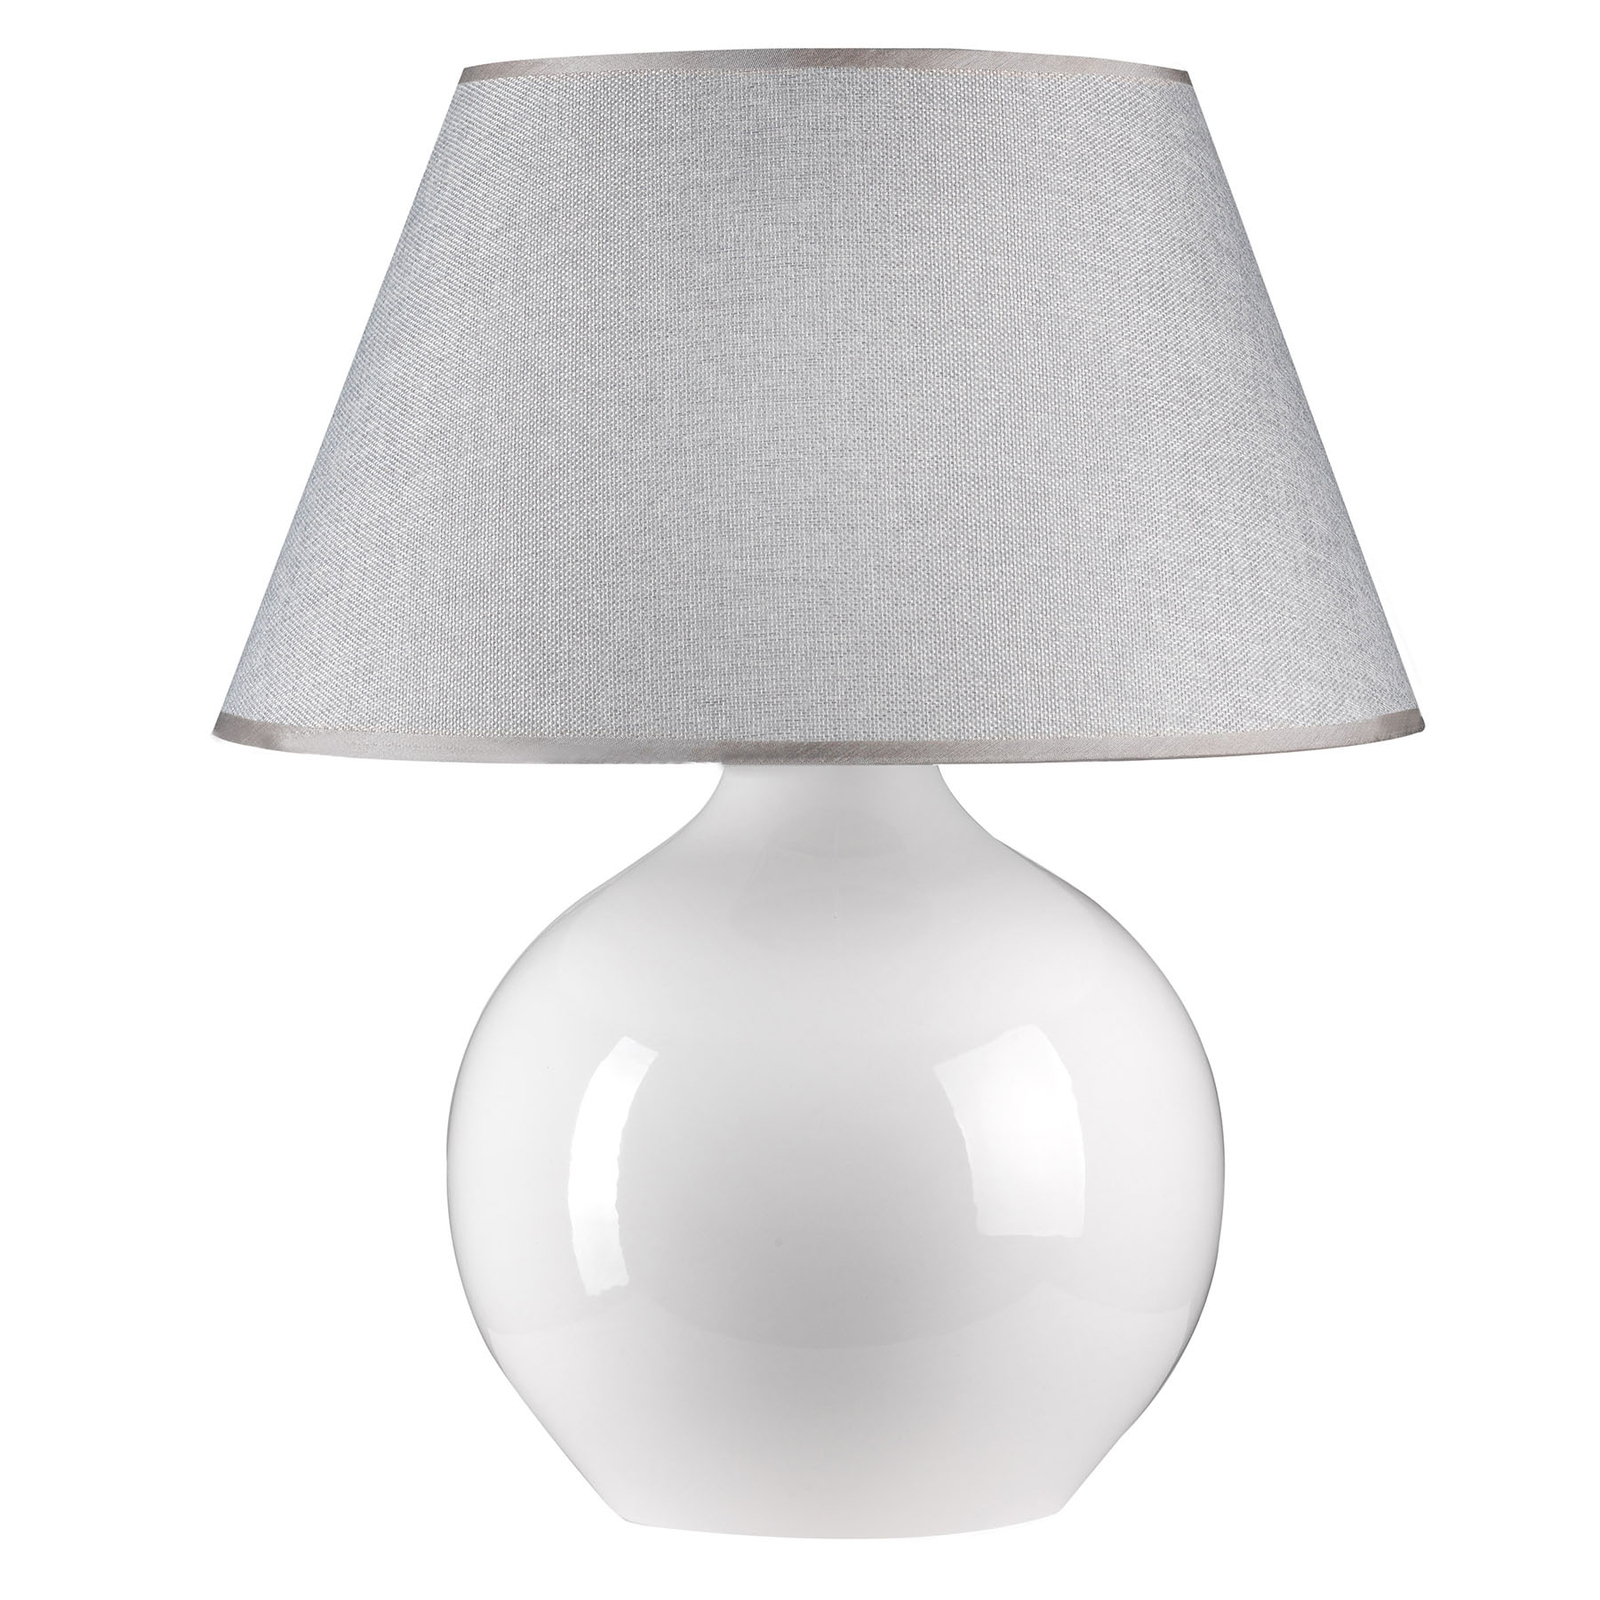 Pöytälamppu Sfera, korkeus 53 cm, valkoinen/harmaa